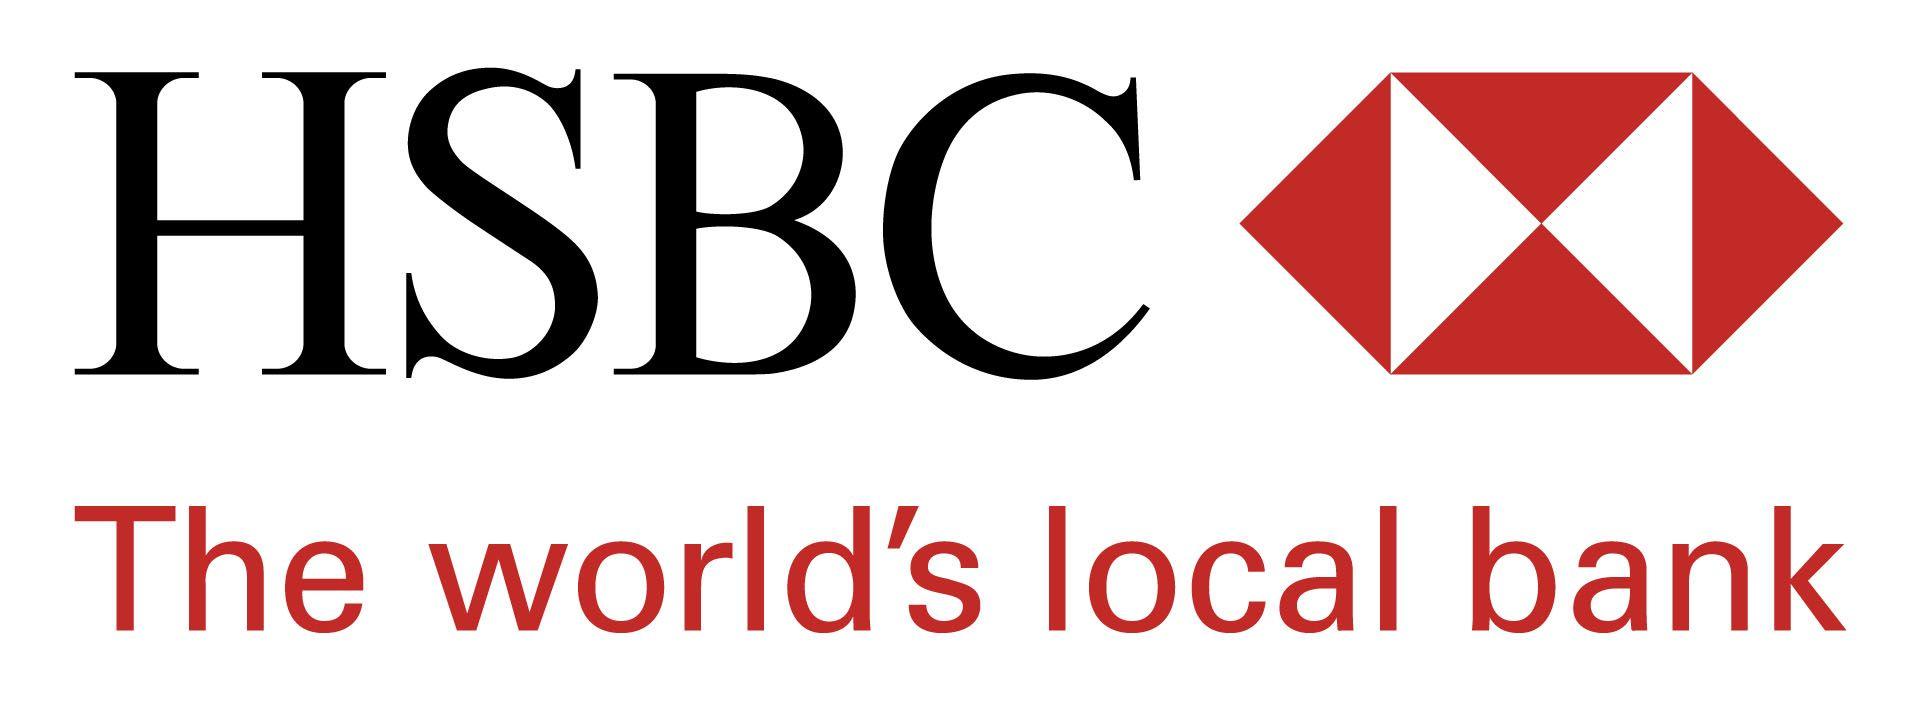 HSBC Bank Logo - HSBC Bank « Logos & Brands Directory